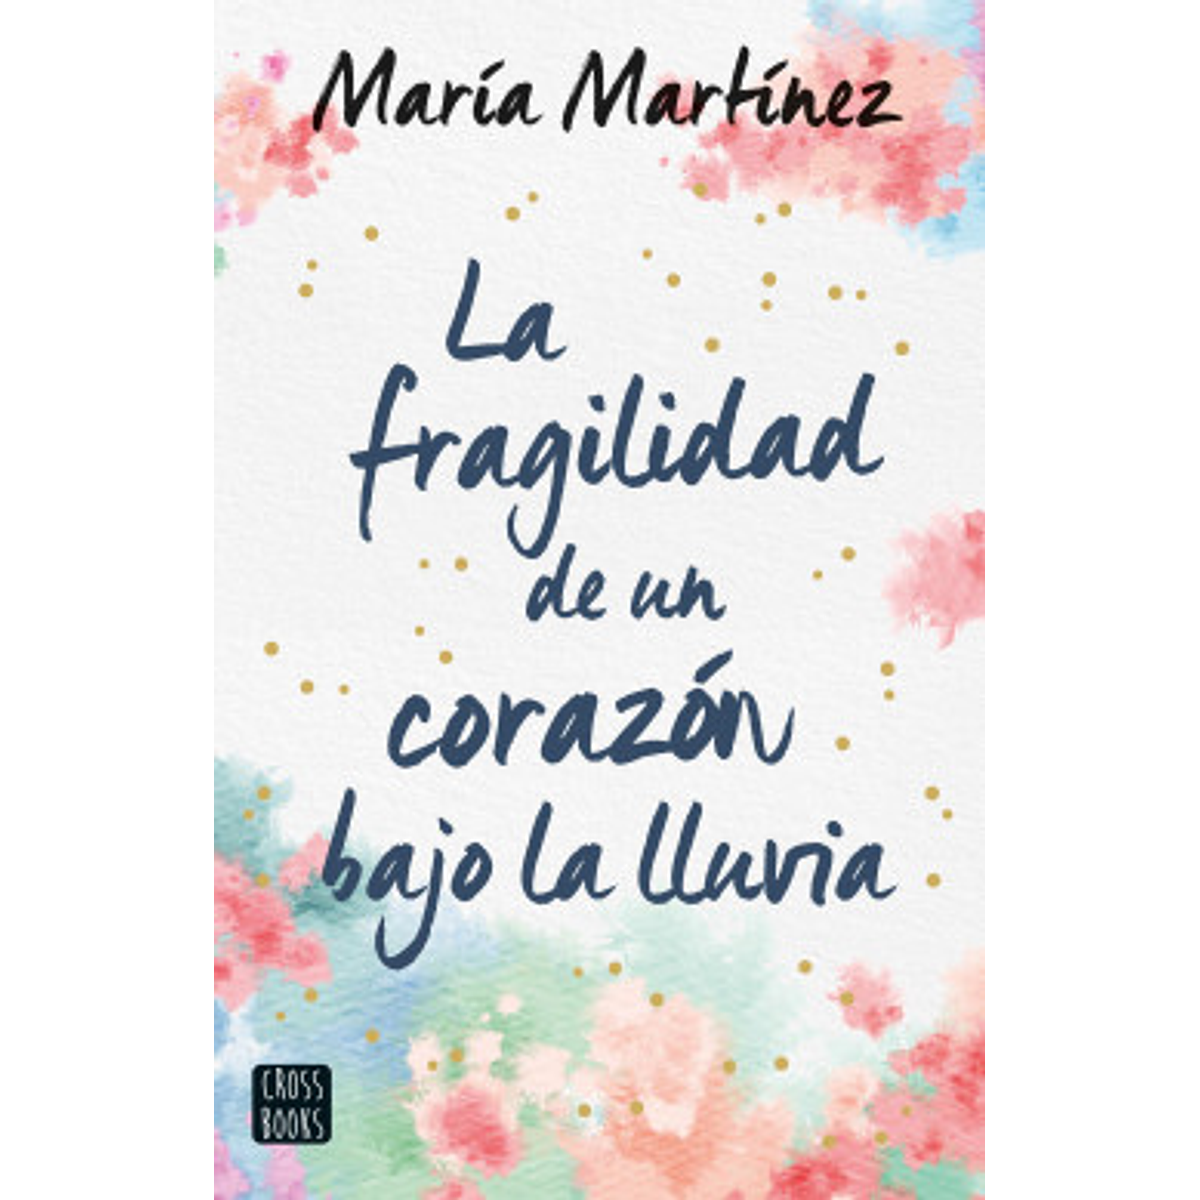 La fragilidad de un corazon bajo la lluvia - Maria martinez en Santiago de  Chile